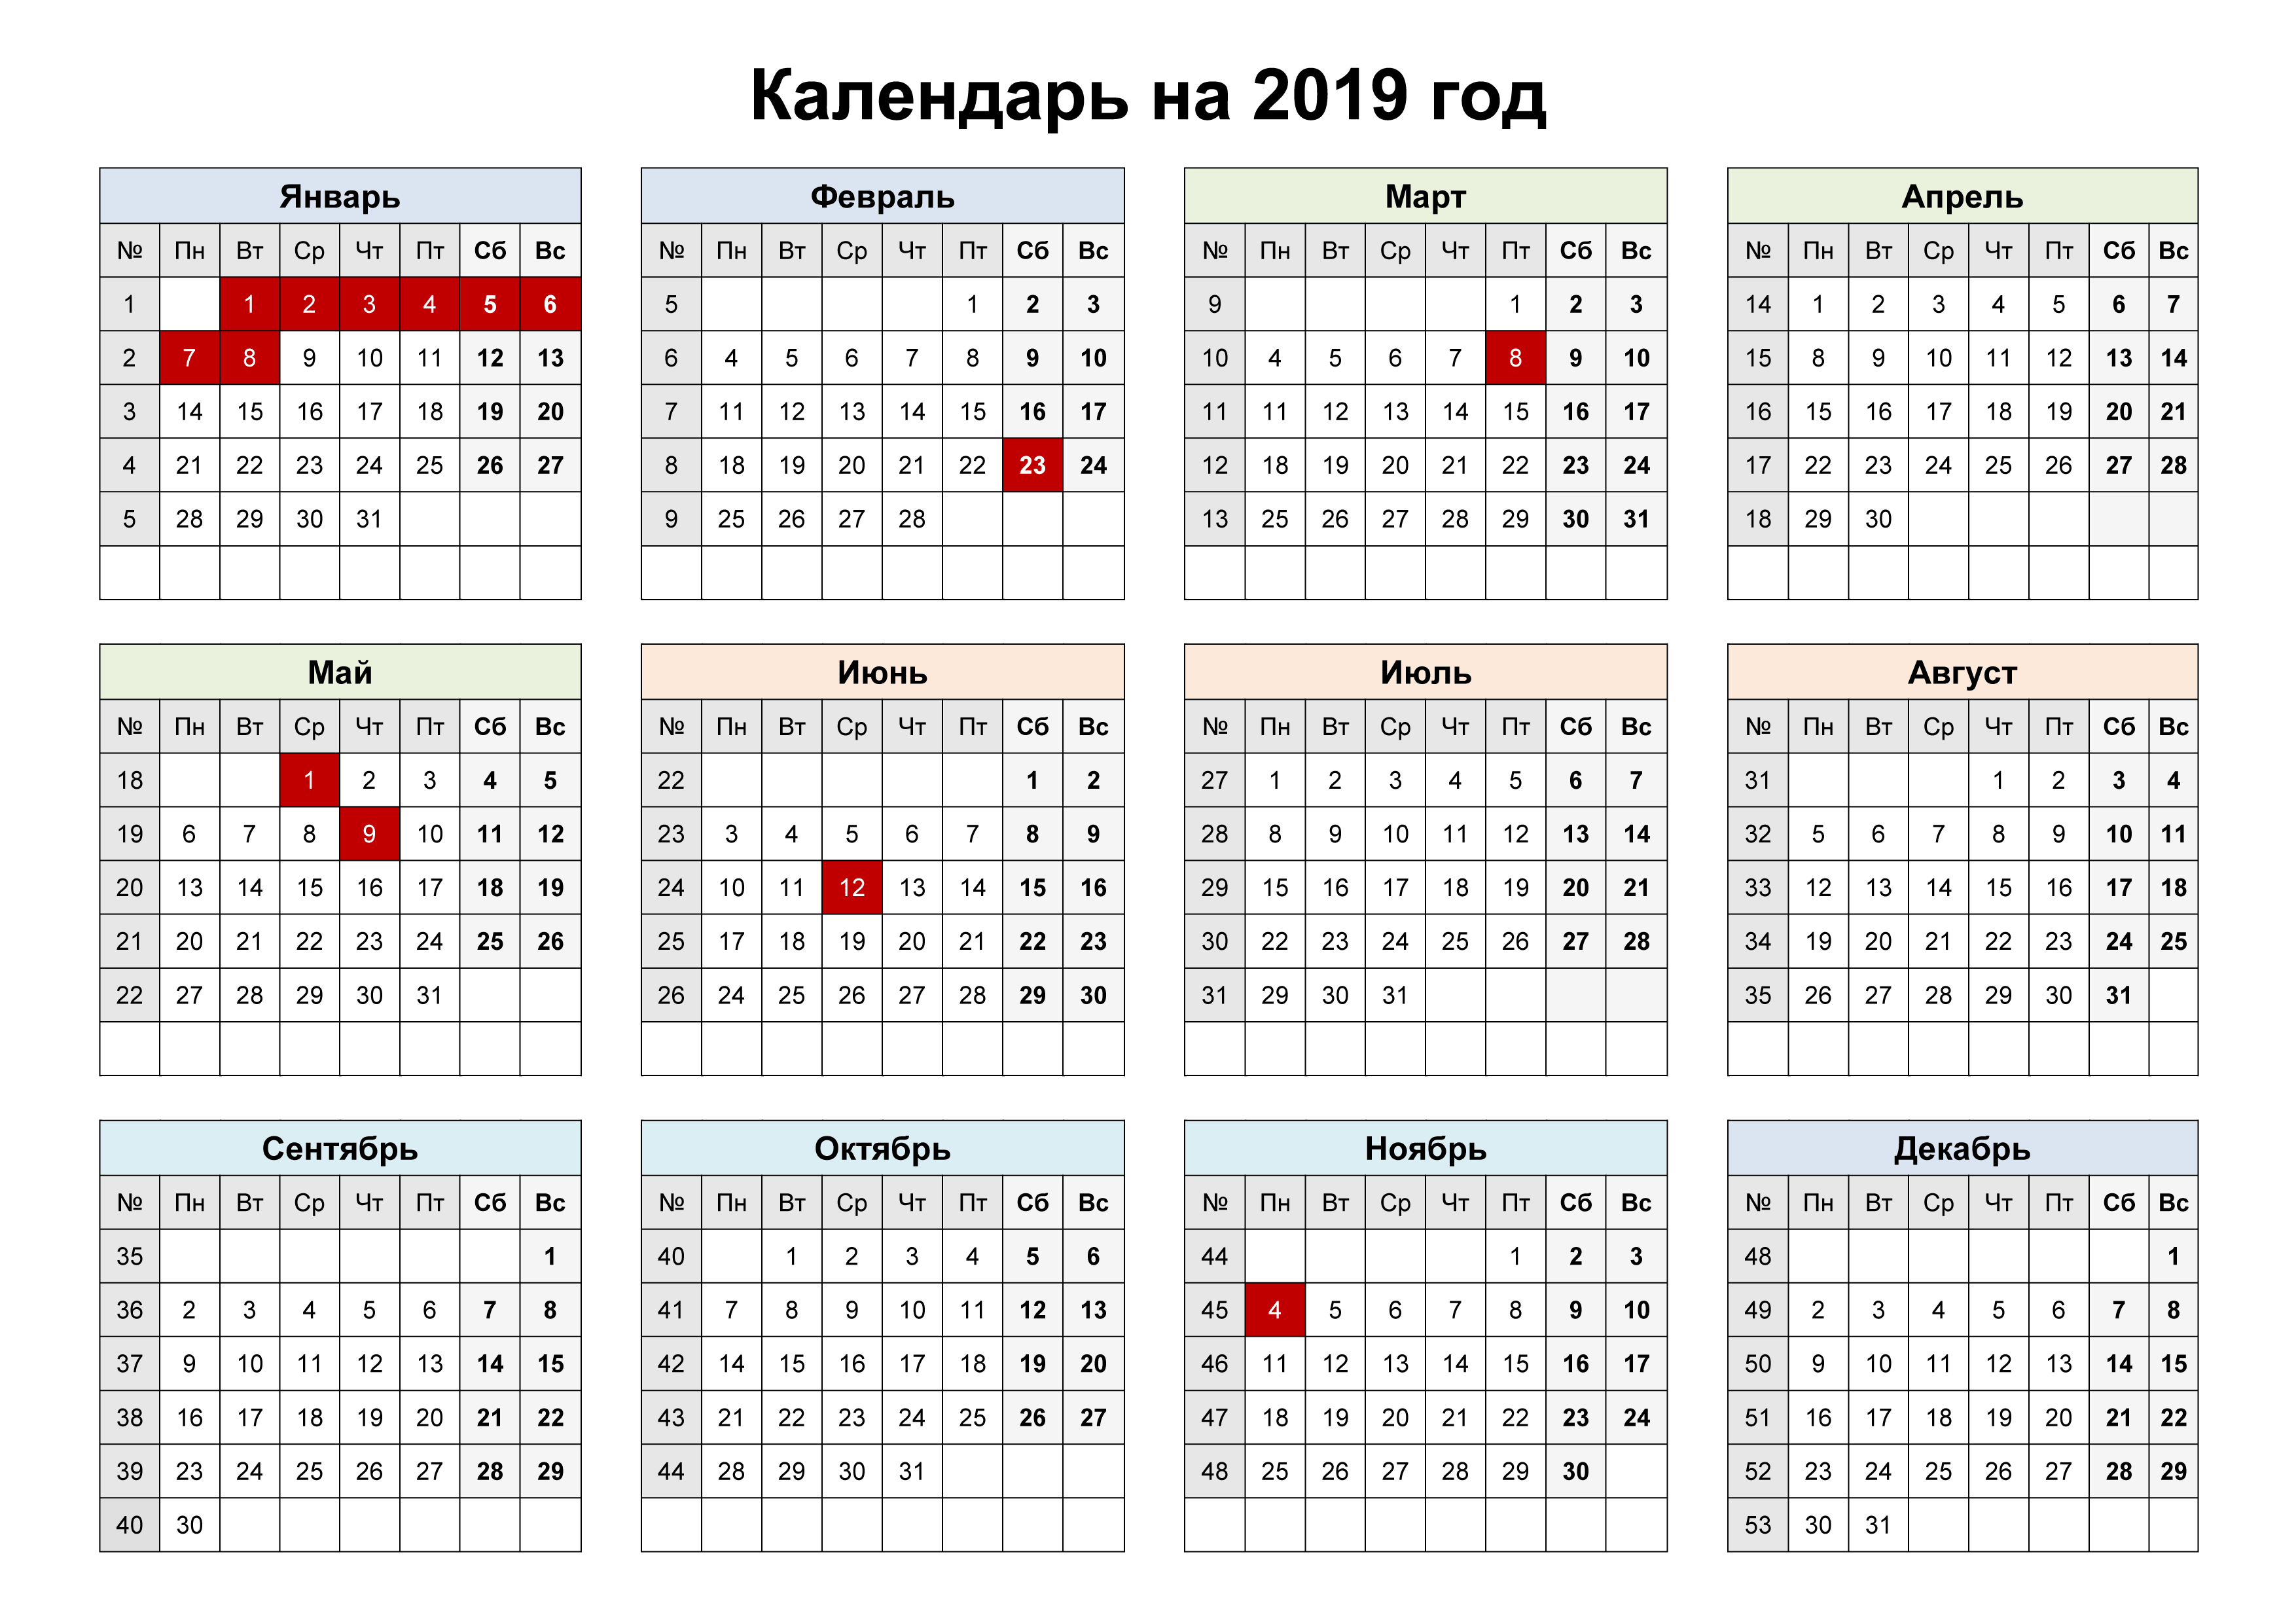 Календарь выходных и праздниных дней 2019 года